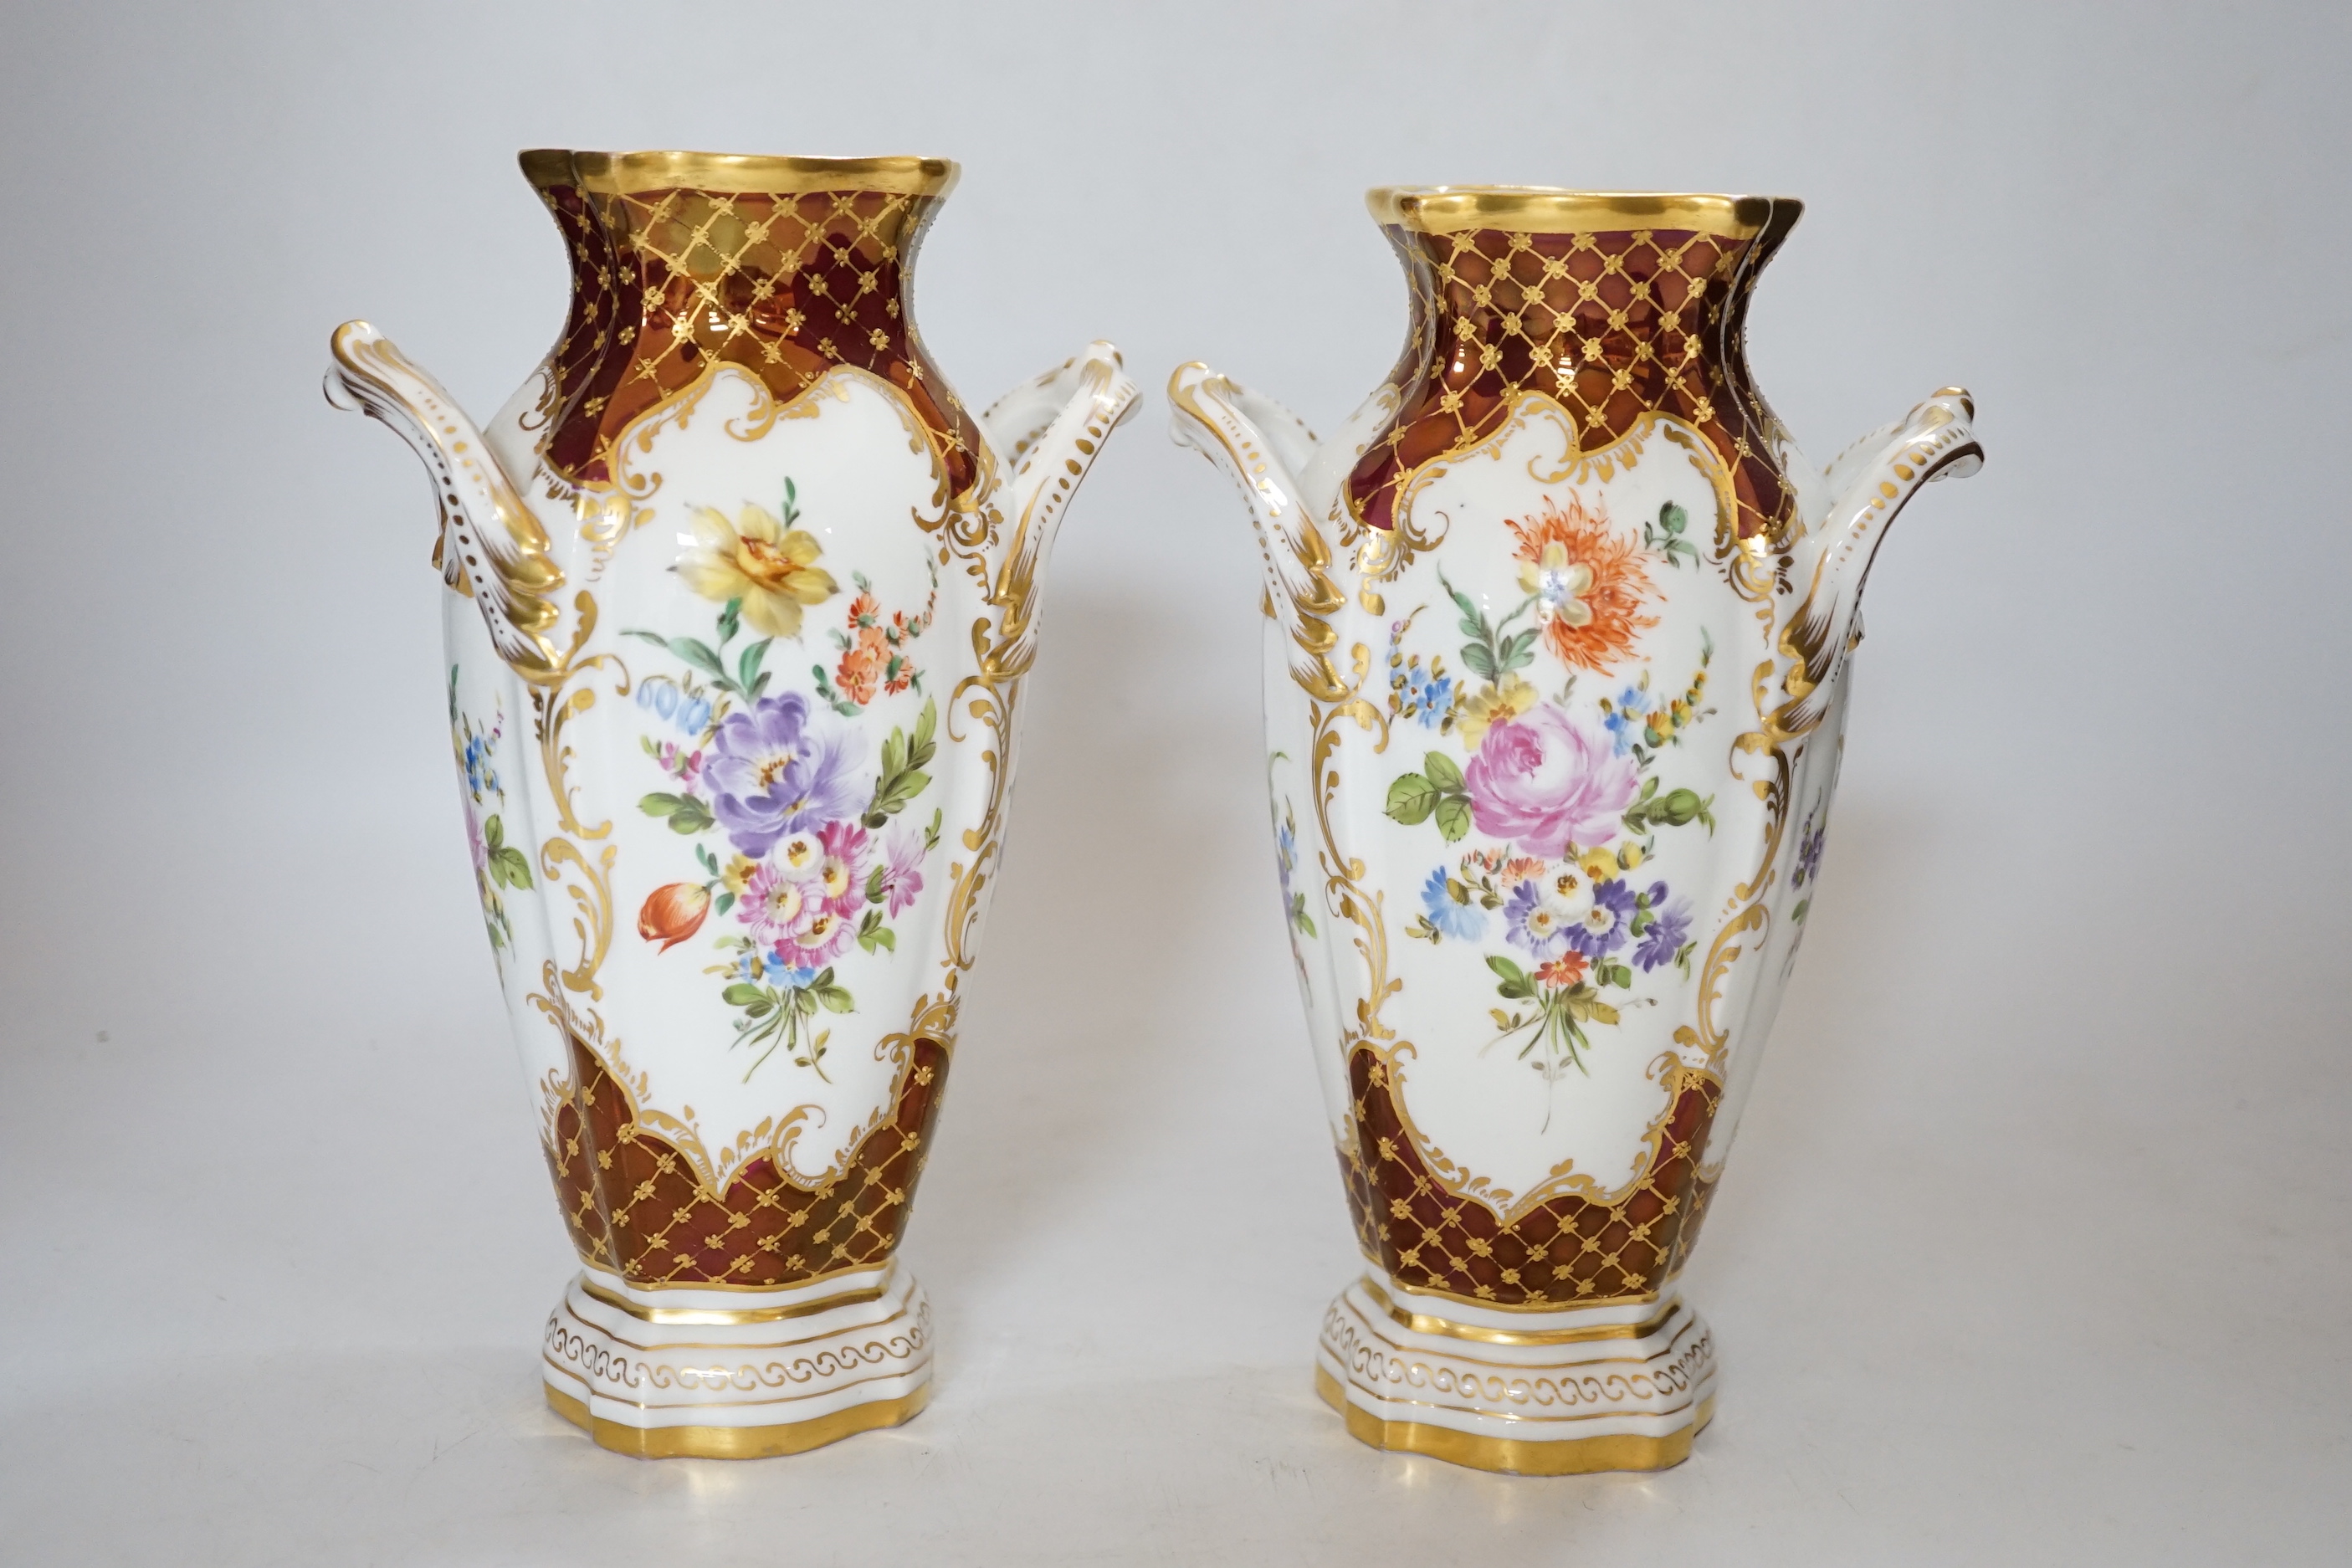 A pair of Potschappel porcelain vases, 20cm